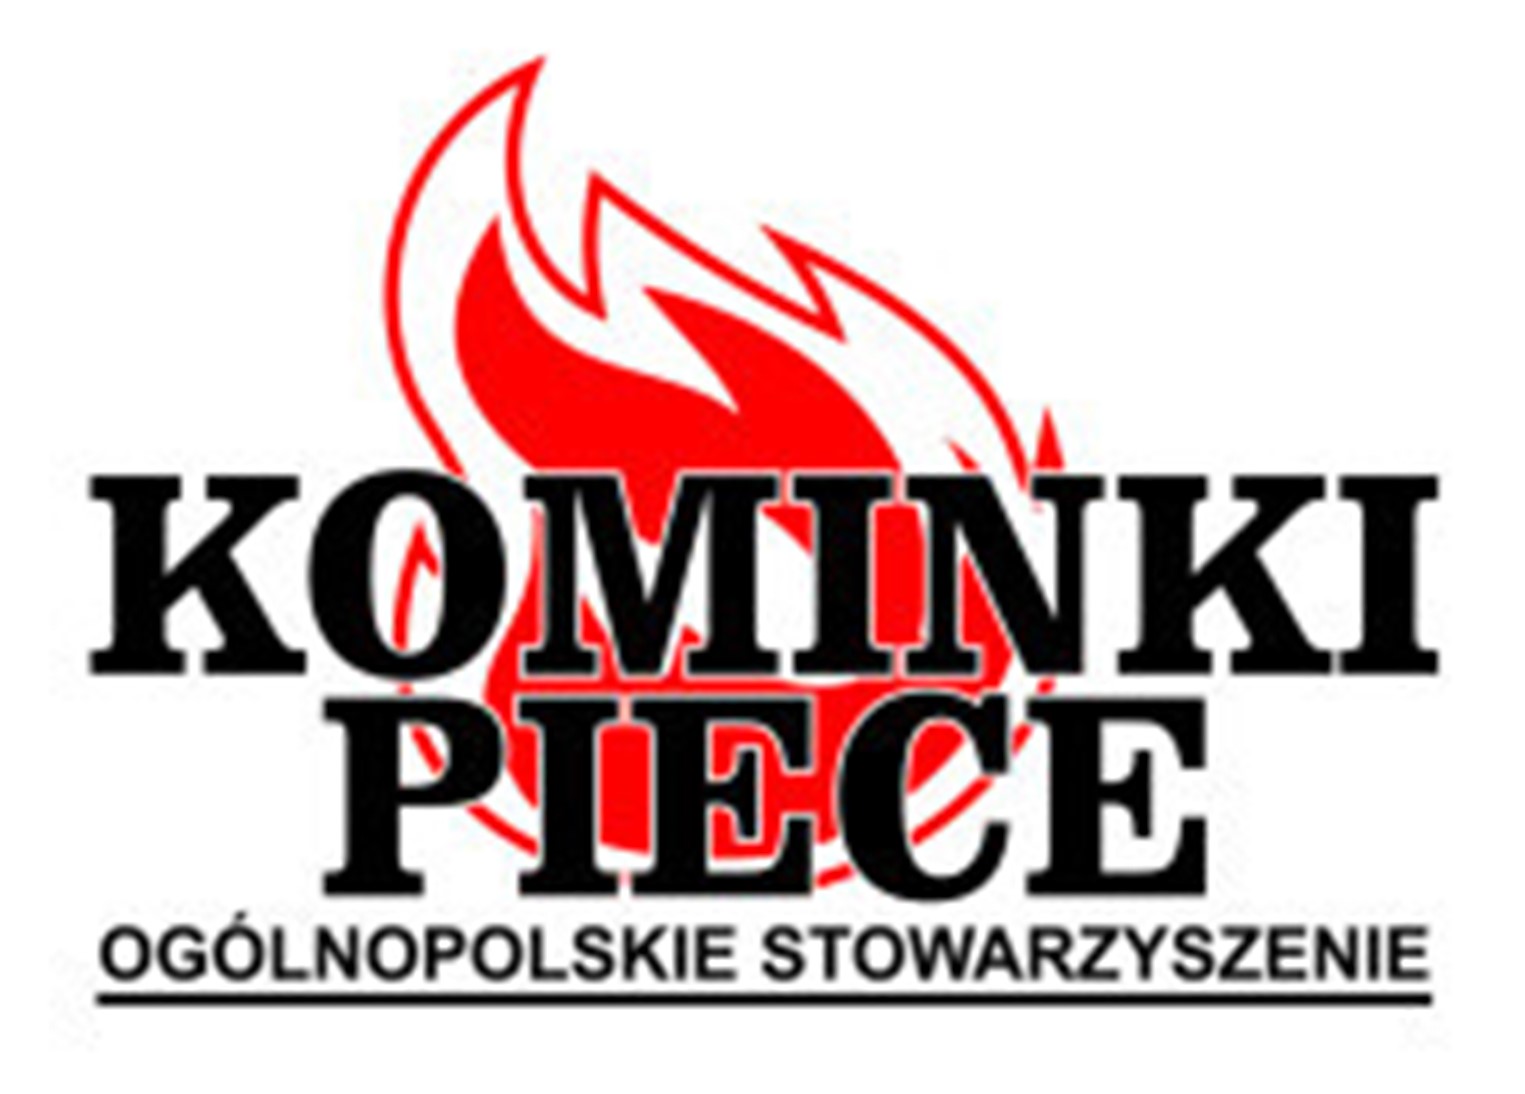 Ogólnopolskie Stowarzyszenie Kominki i Piece